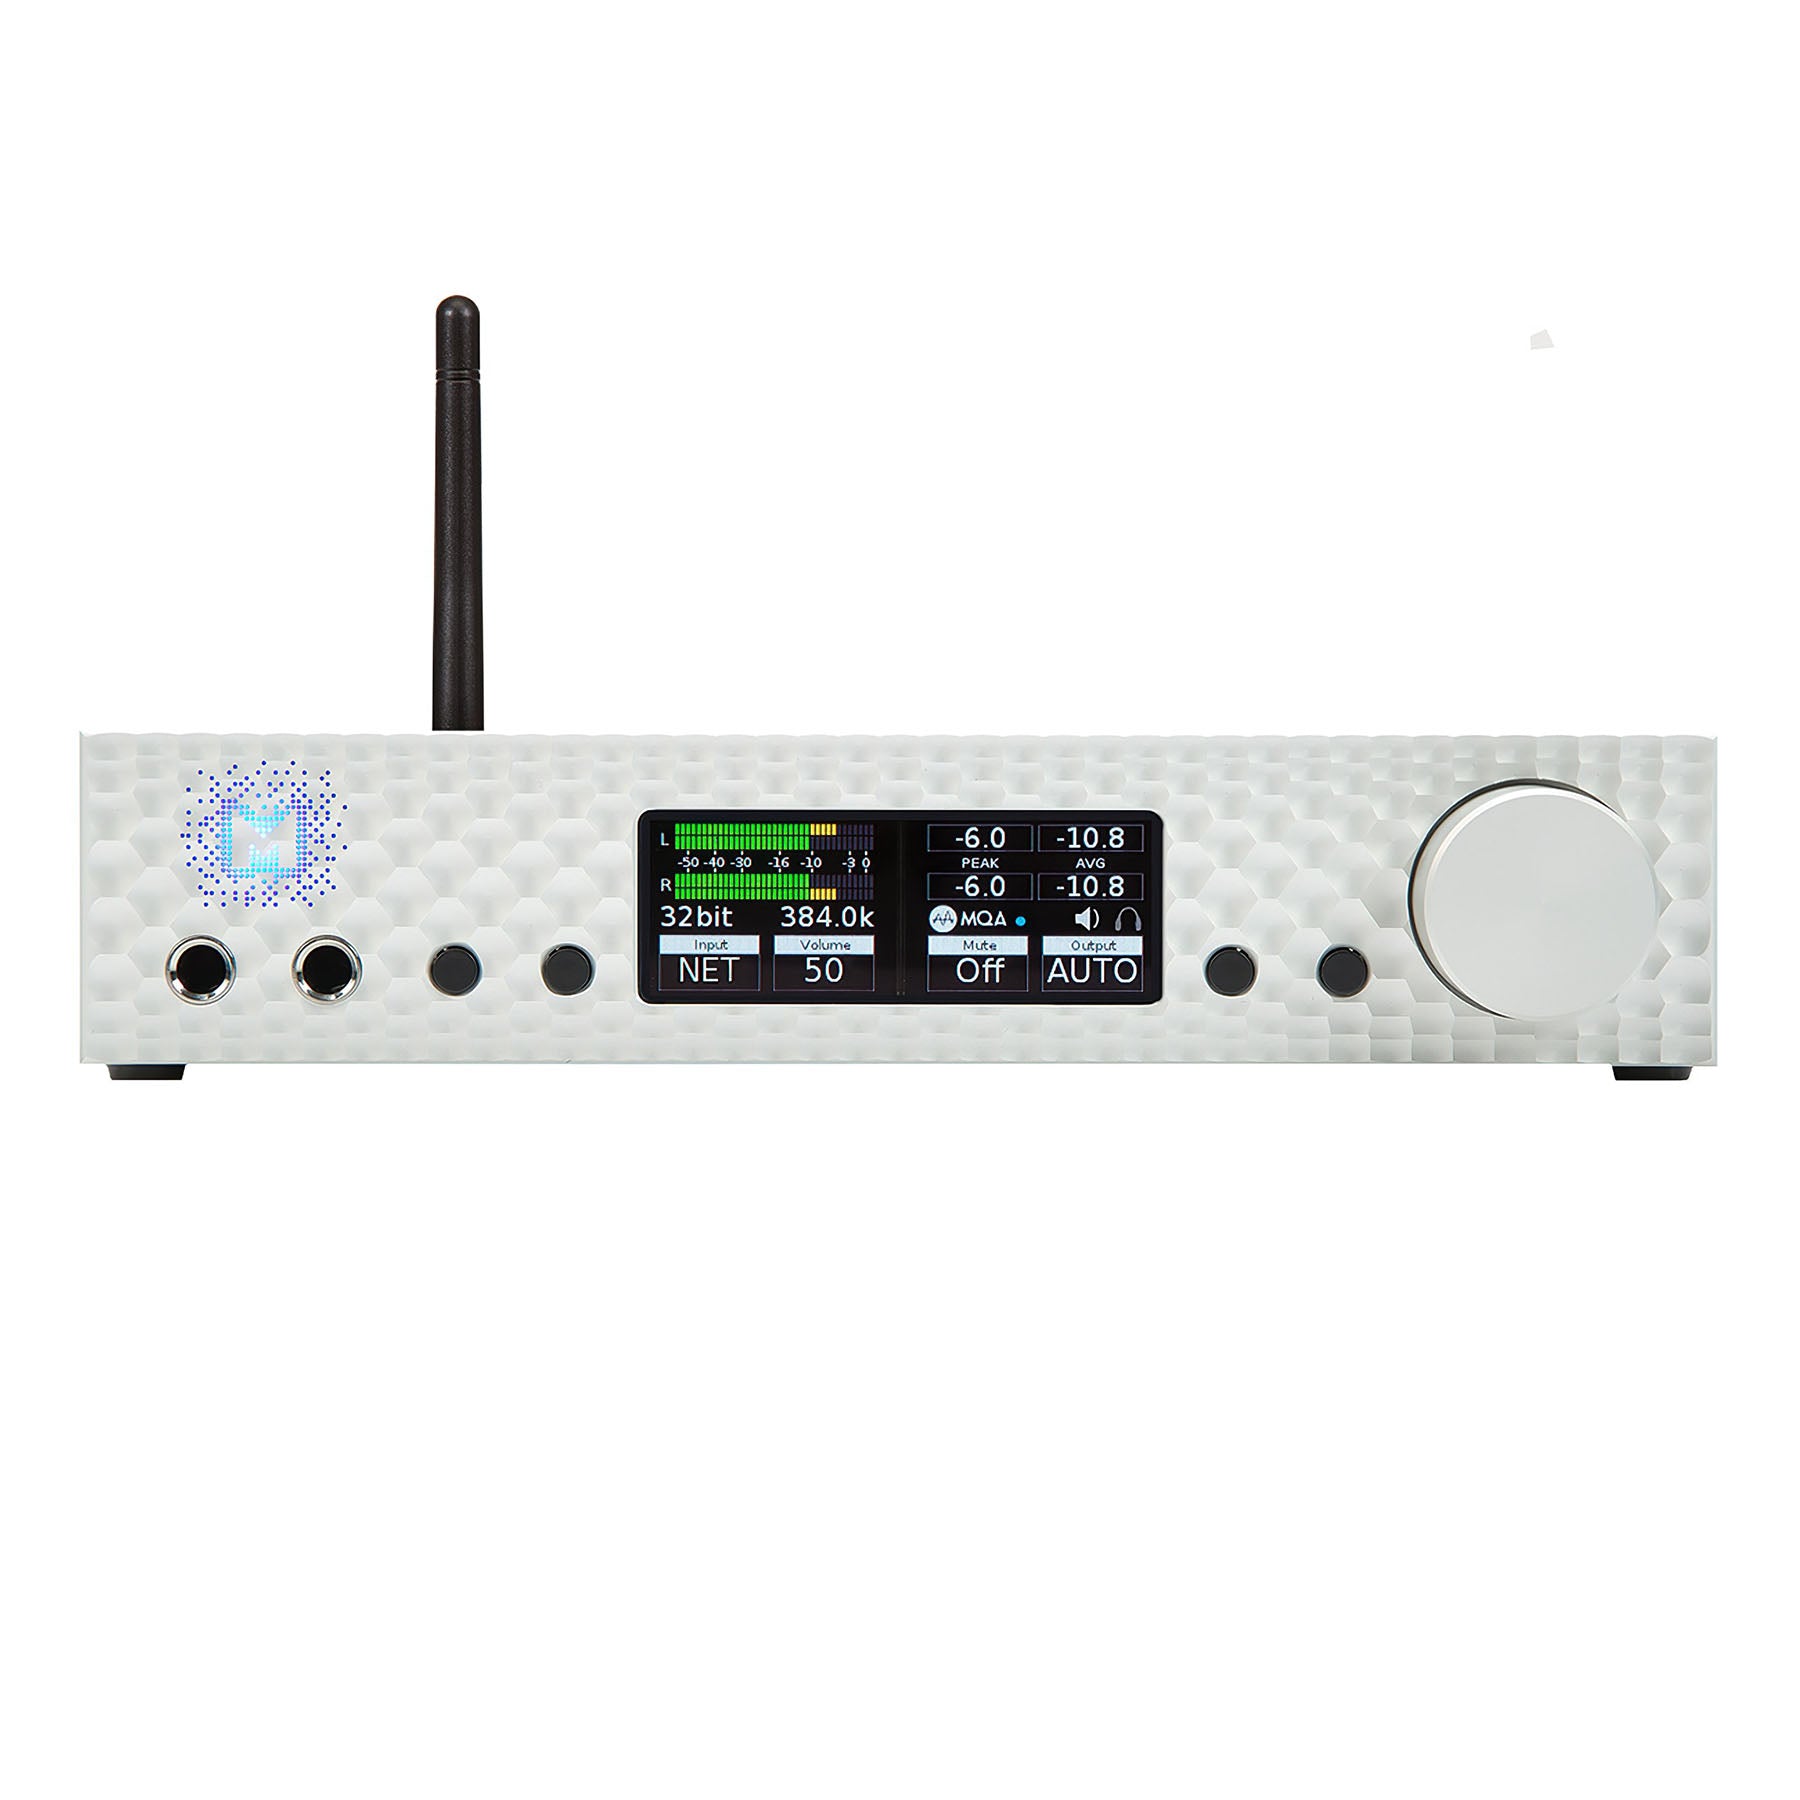 Mytek Brooklyn Bridge / Reference Stereo Preamplifier / Streamer / DAC / Headphone Amplifier